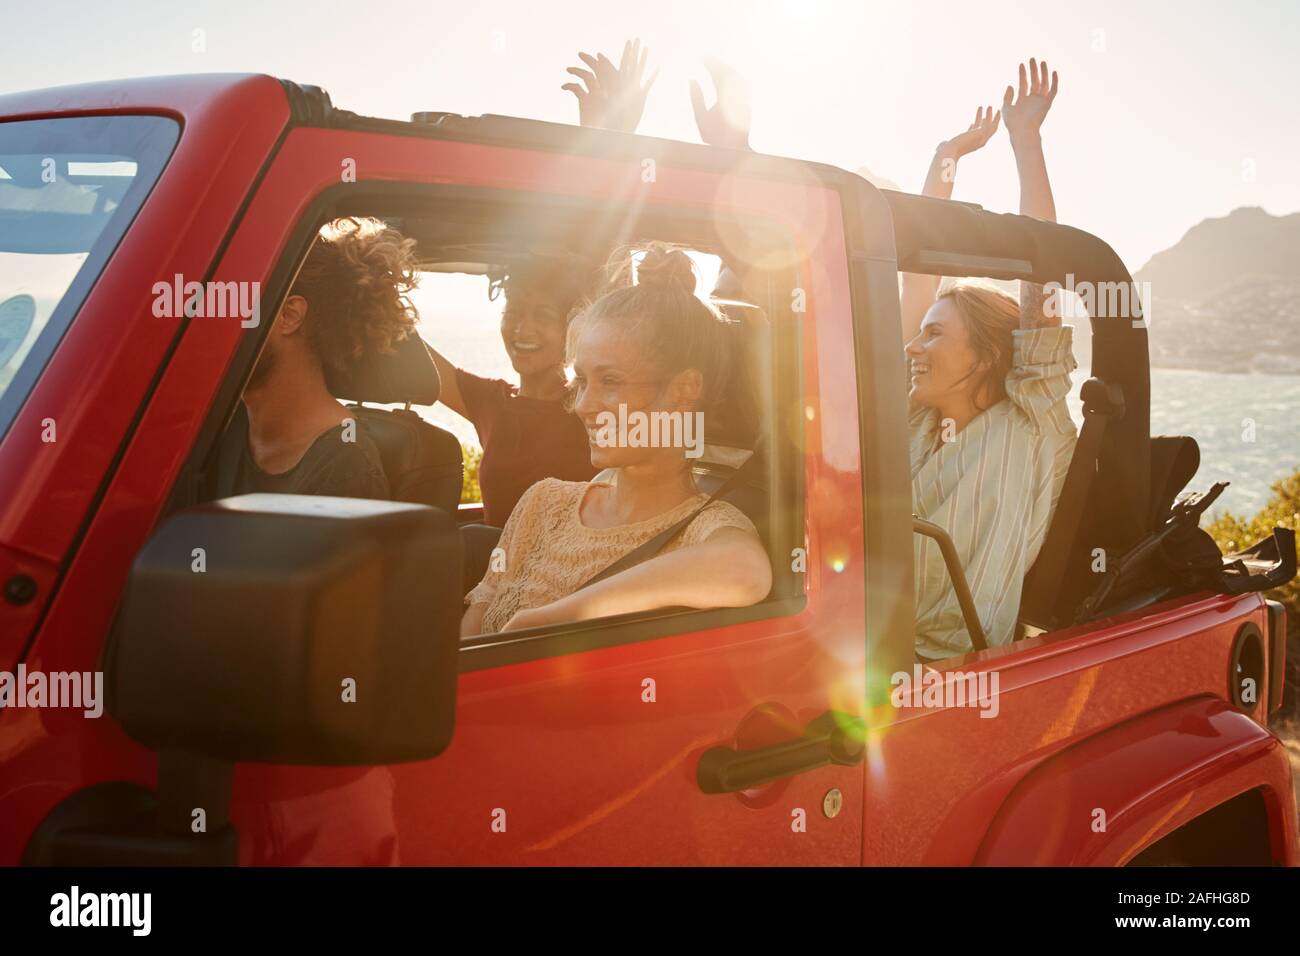 Aufgeregt, junge erwachsene Freunde auf eine Reise Urlaub in einem oben offenen Autofahren, lens flare Stockfoto